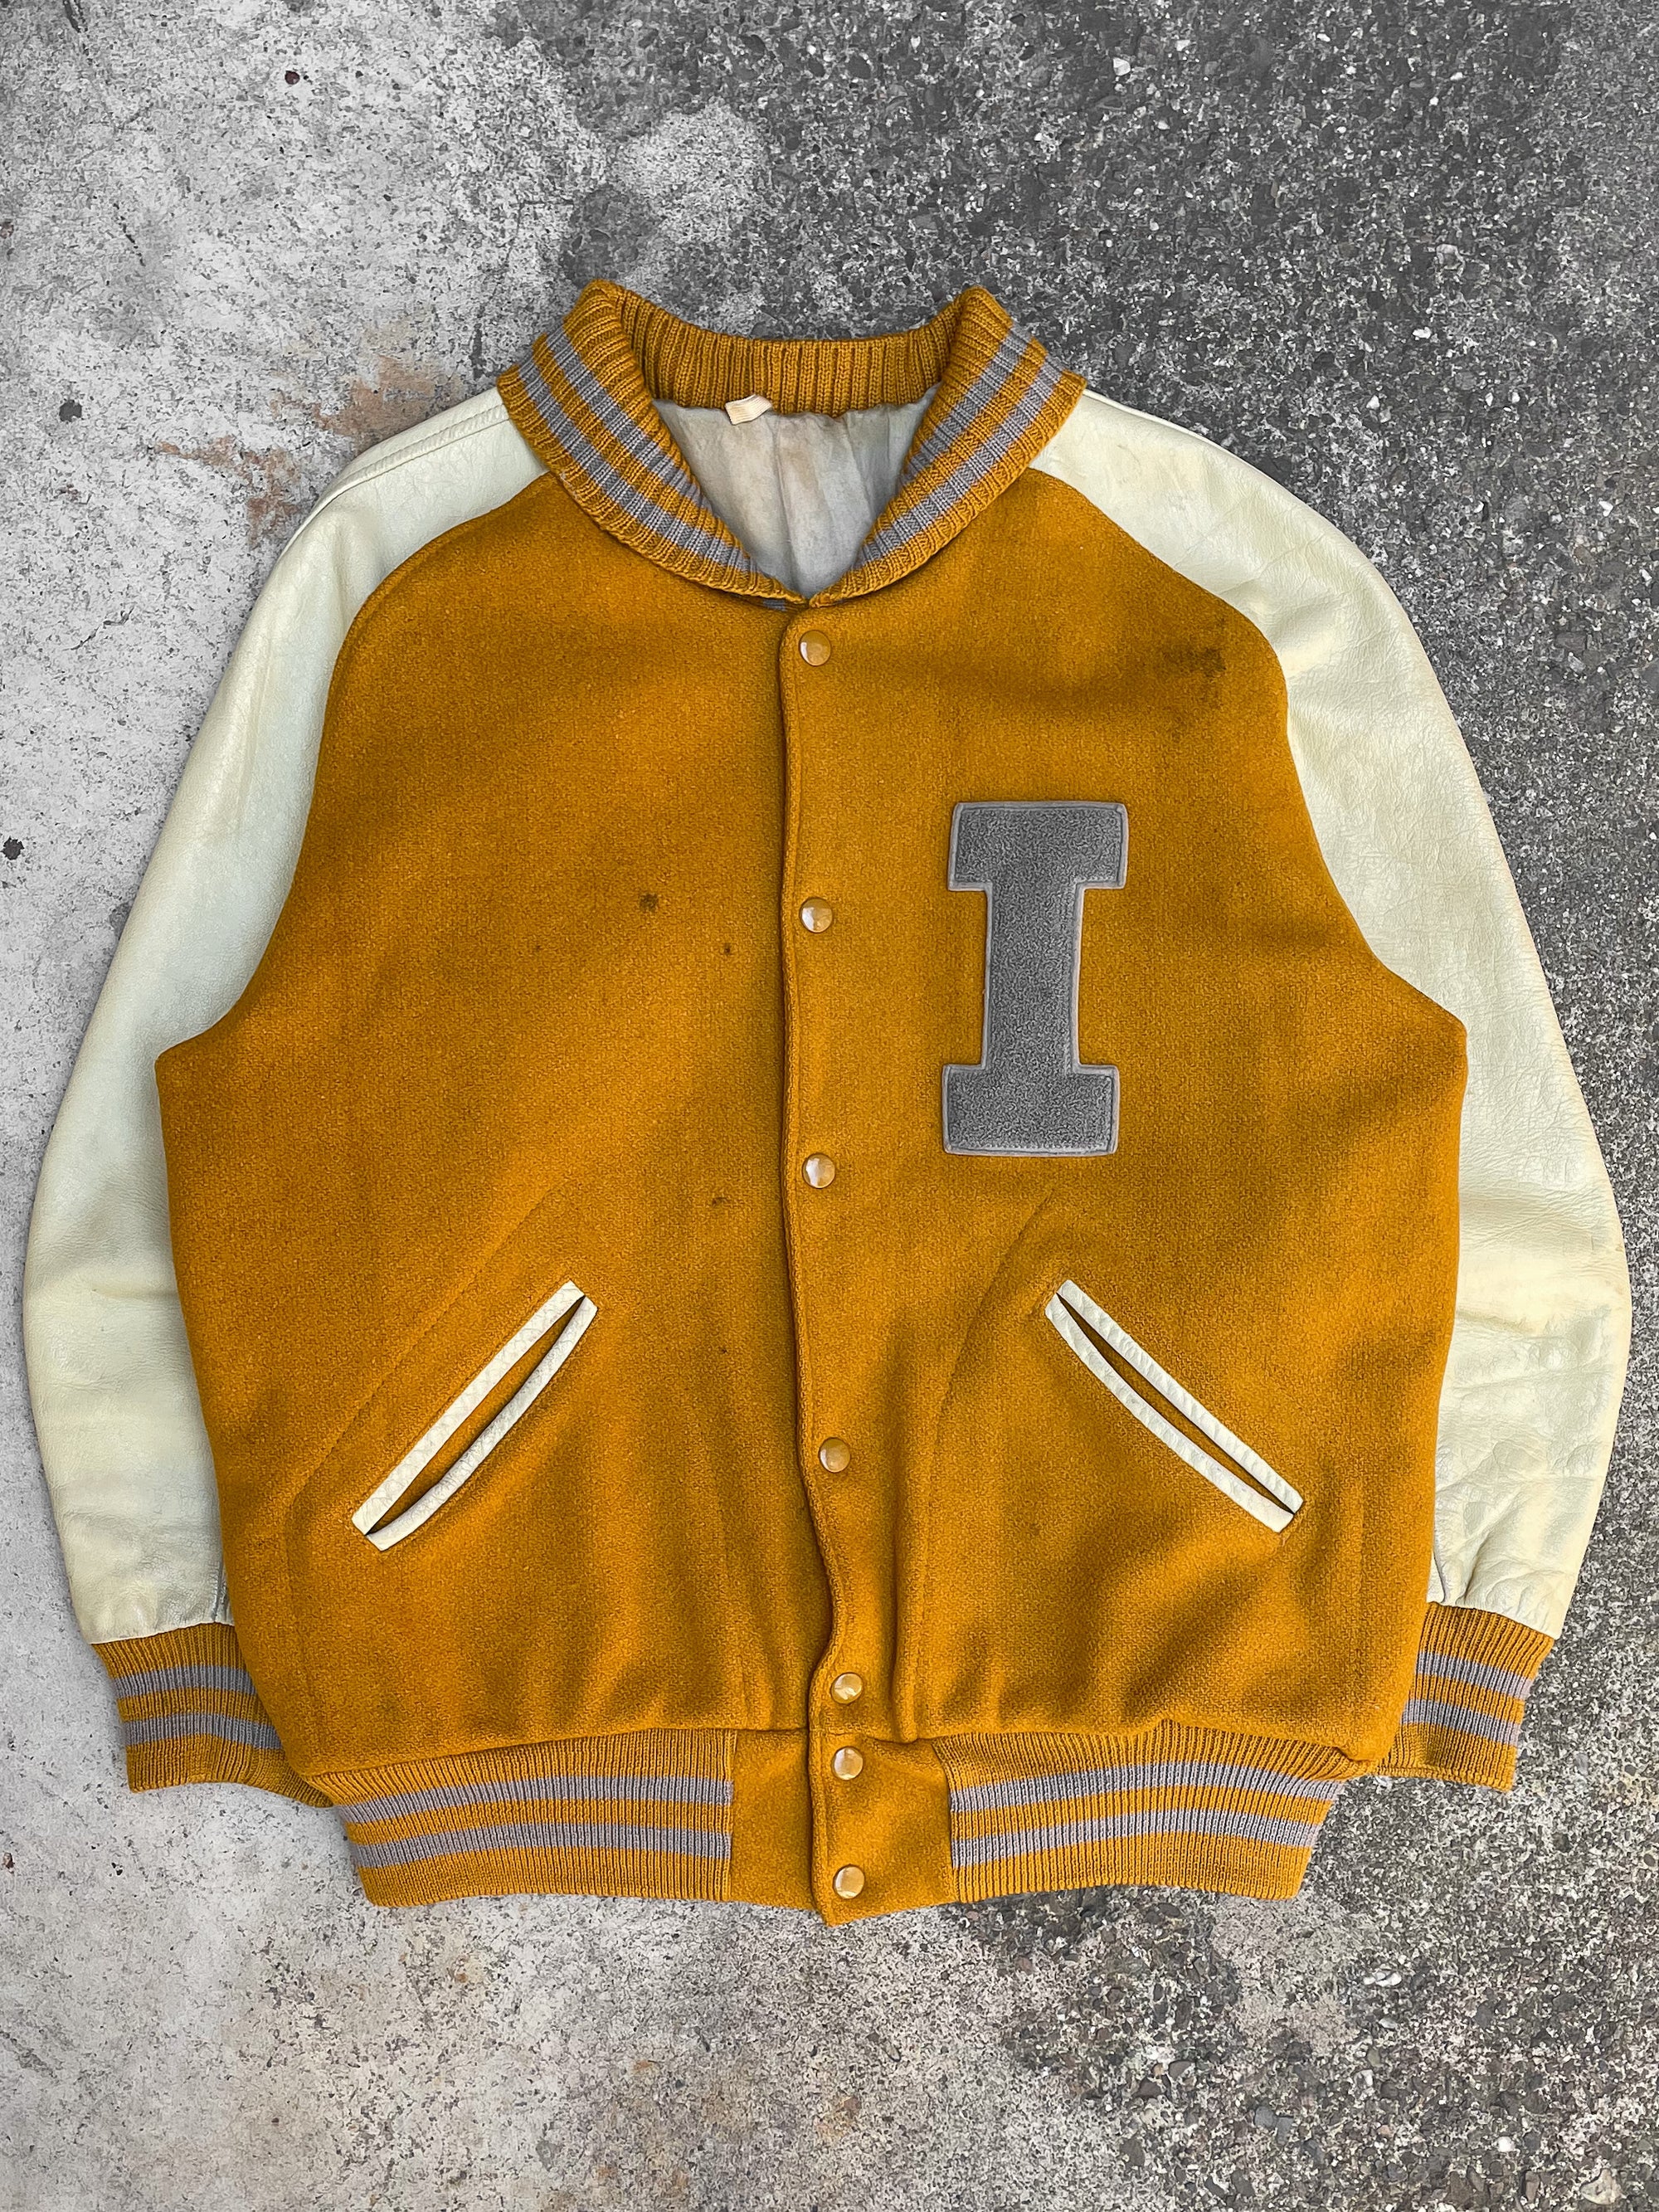 1960s/70s “I” Yellow Varsity Jacket (M/L)